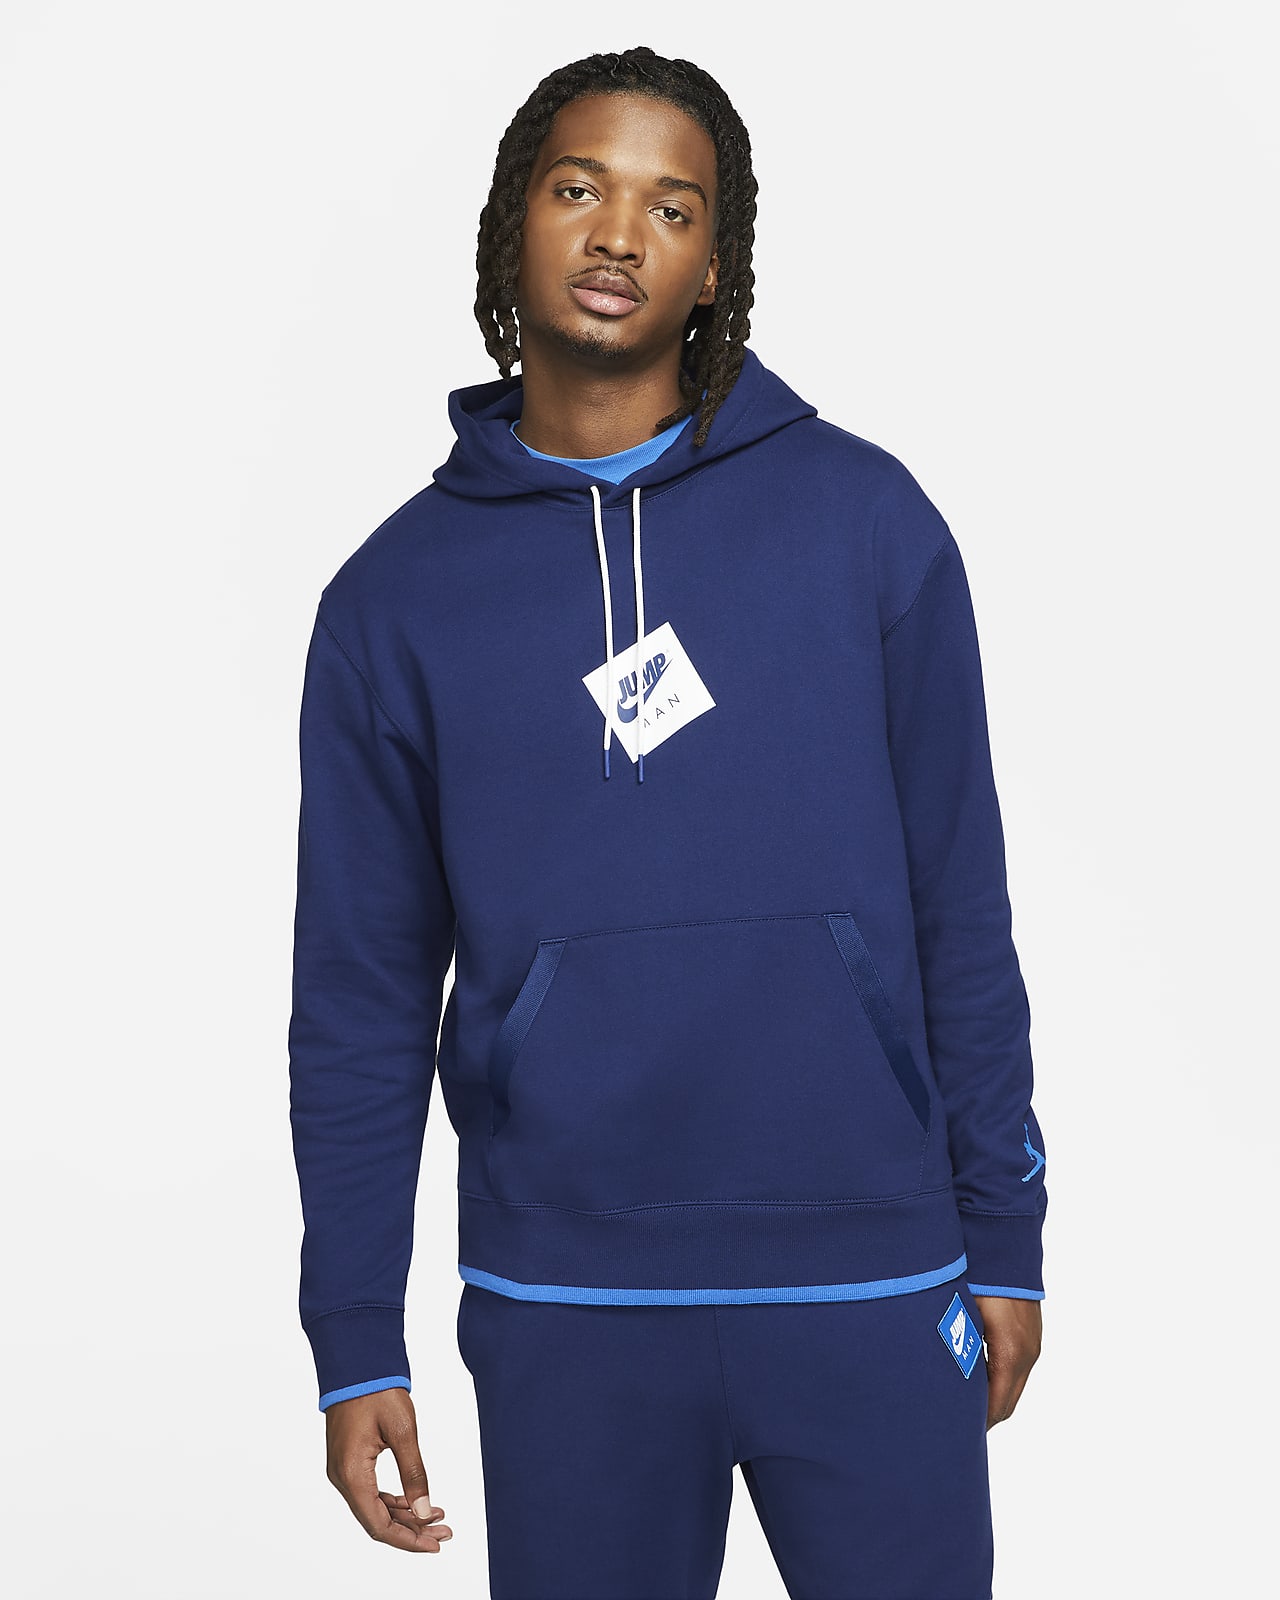 Printed Fleece Pullover Hoodie. Nike LU